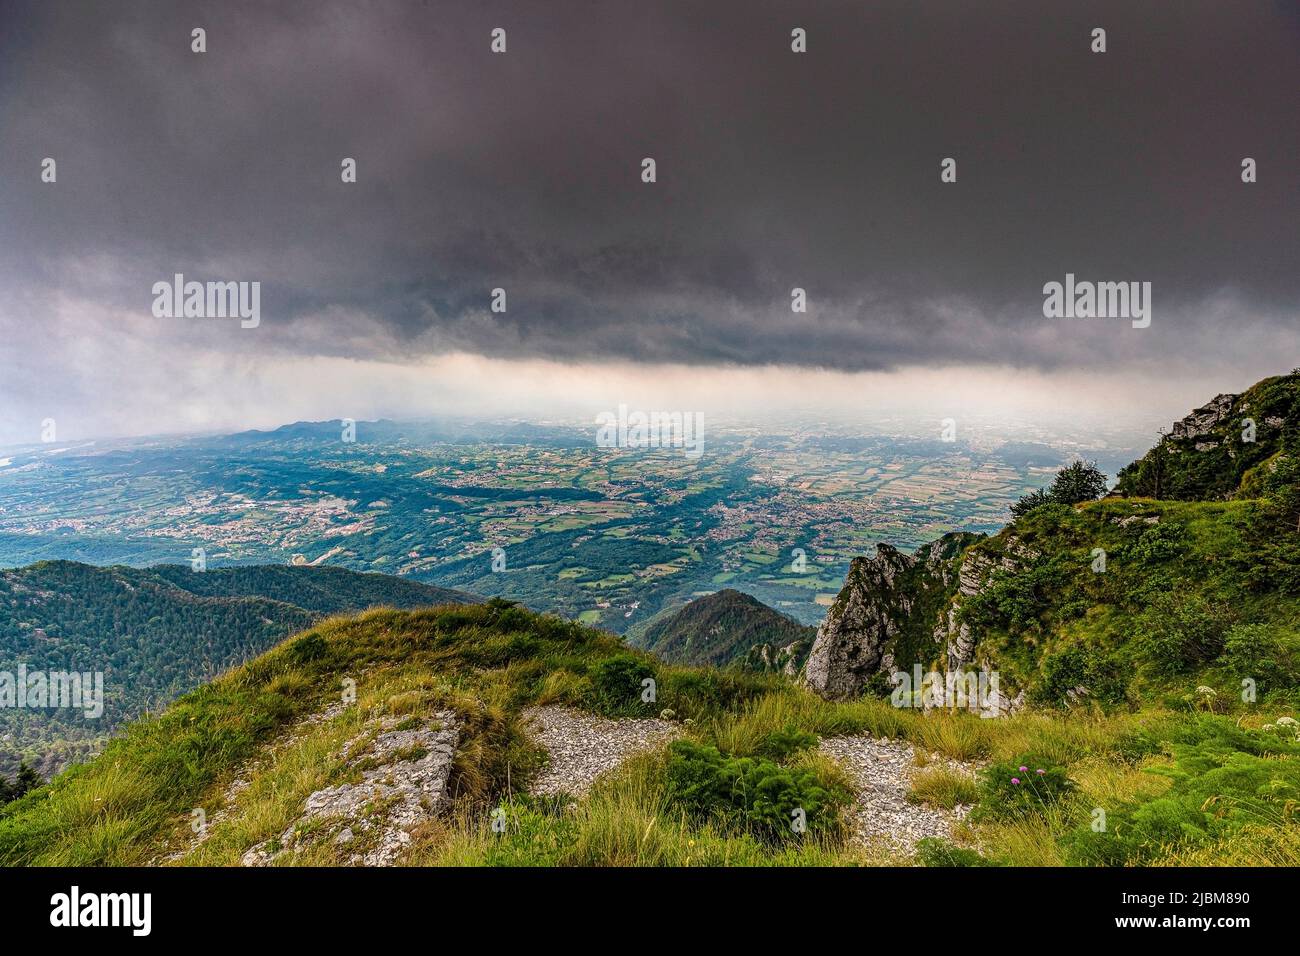 Italia Veneto Da dintorni Col Formiga - Veduta sulla pianura con temporale Foto de stock